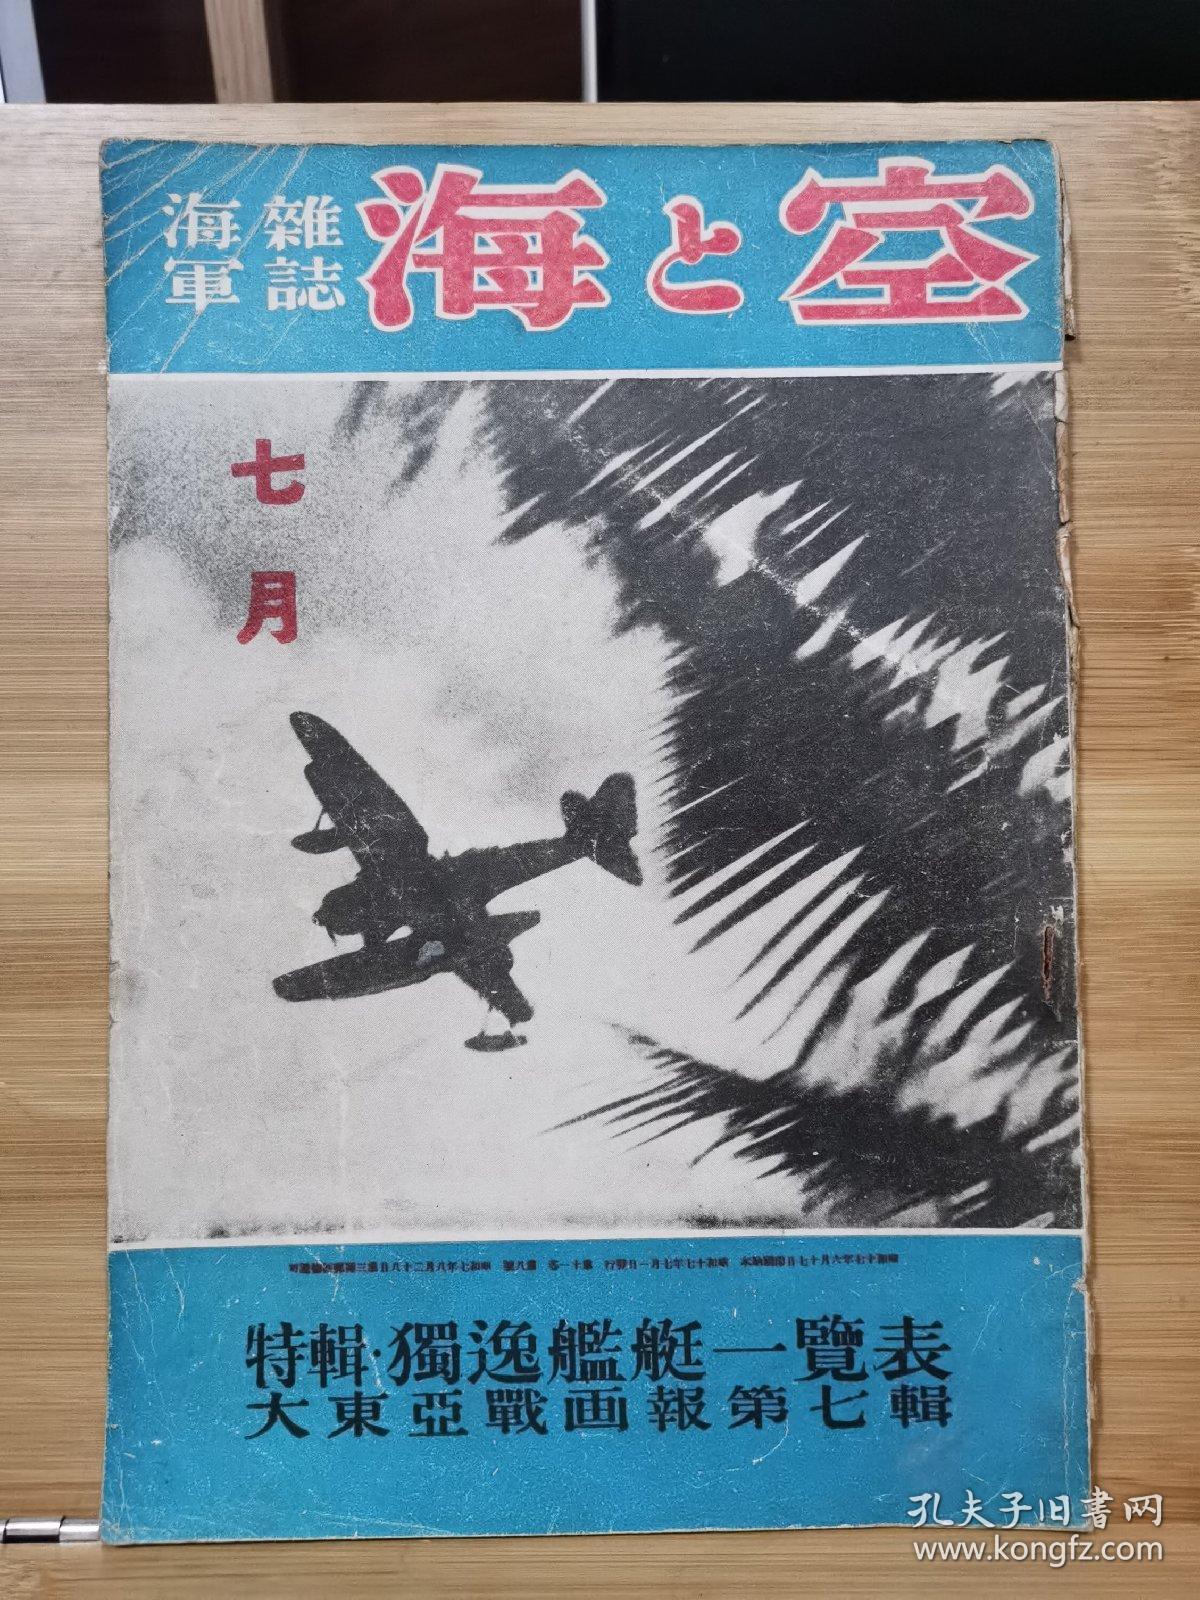 日本海军杂志 海与空 昭和17年6月 1942年 大东亚圣战画报第七辑 孔夫子旧书网